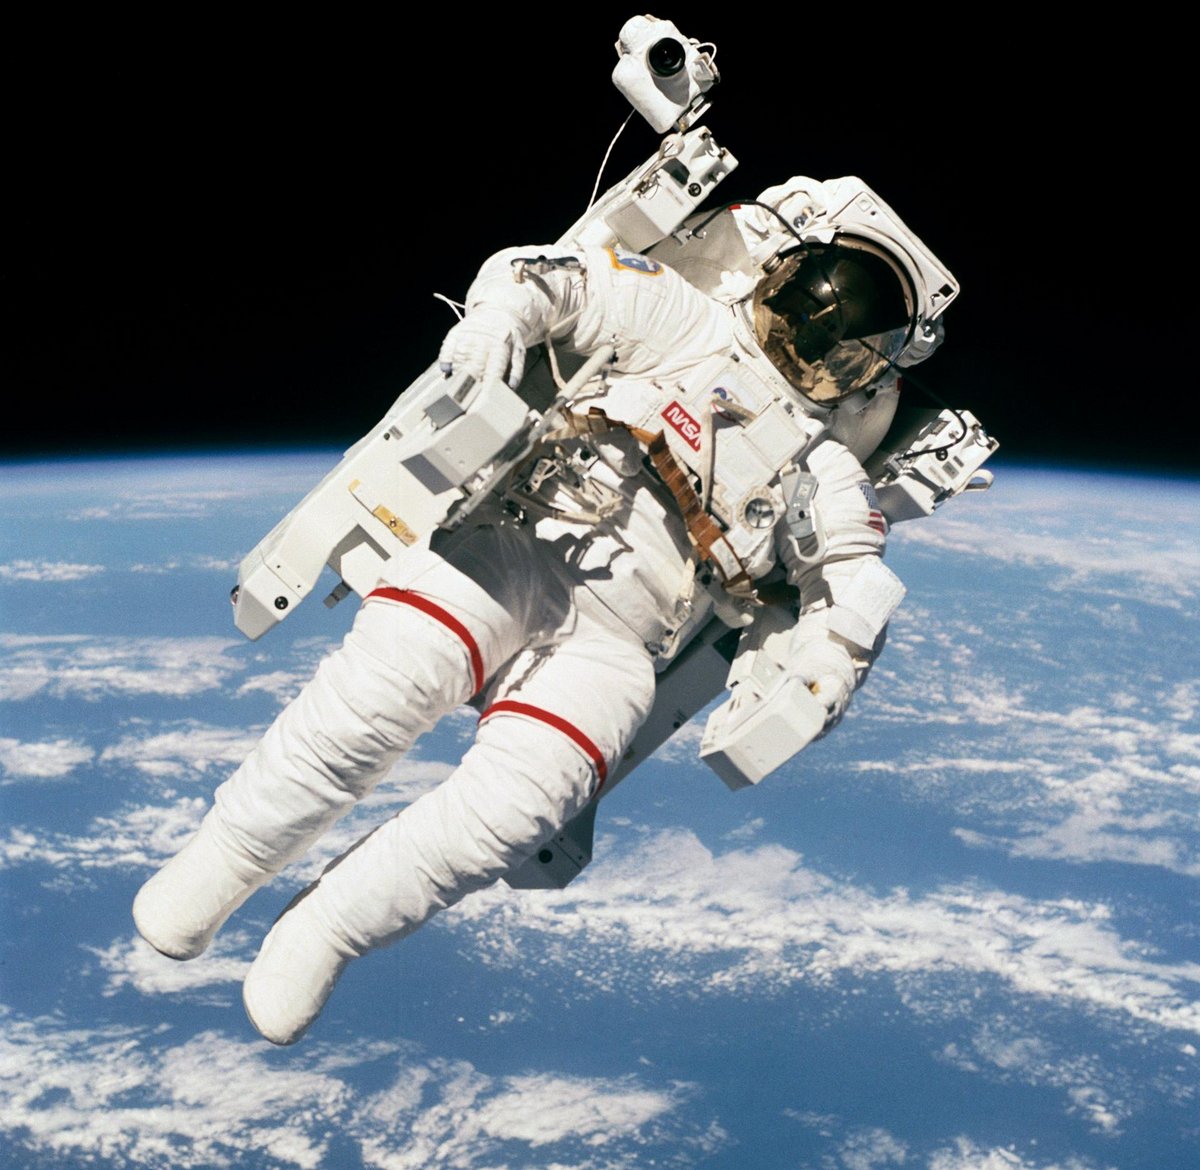 L'une des iconiques photos de la sortie autonome de l'astronaute Bruce McCandless II. Remarquez le Nikon embarqué sur son épaule droite ! © NASA